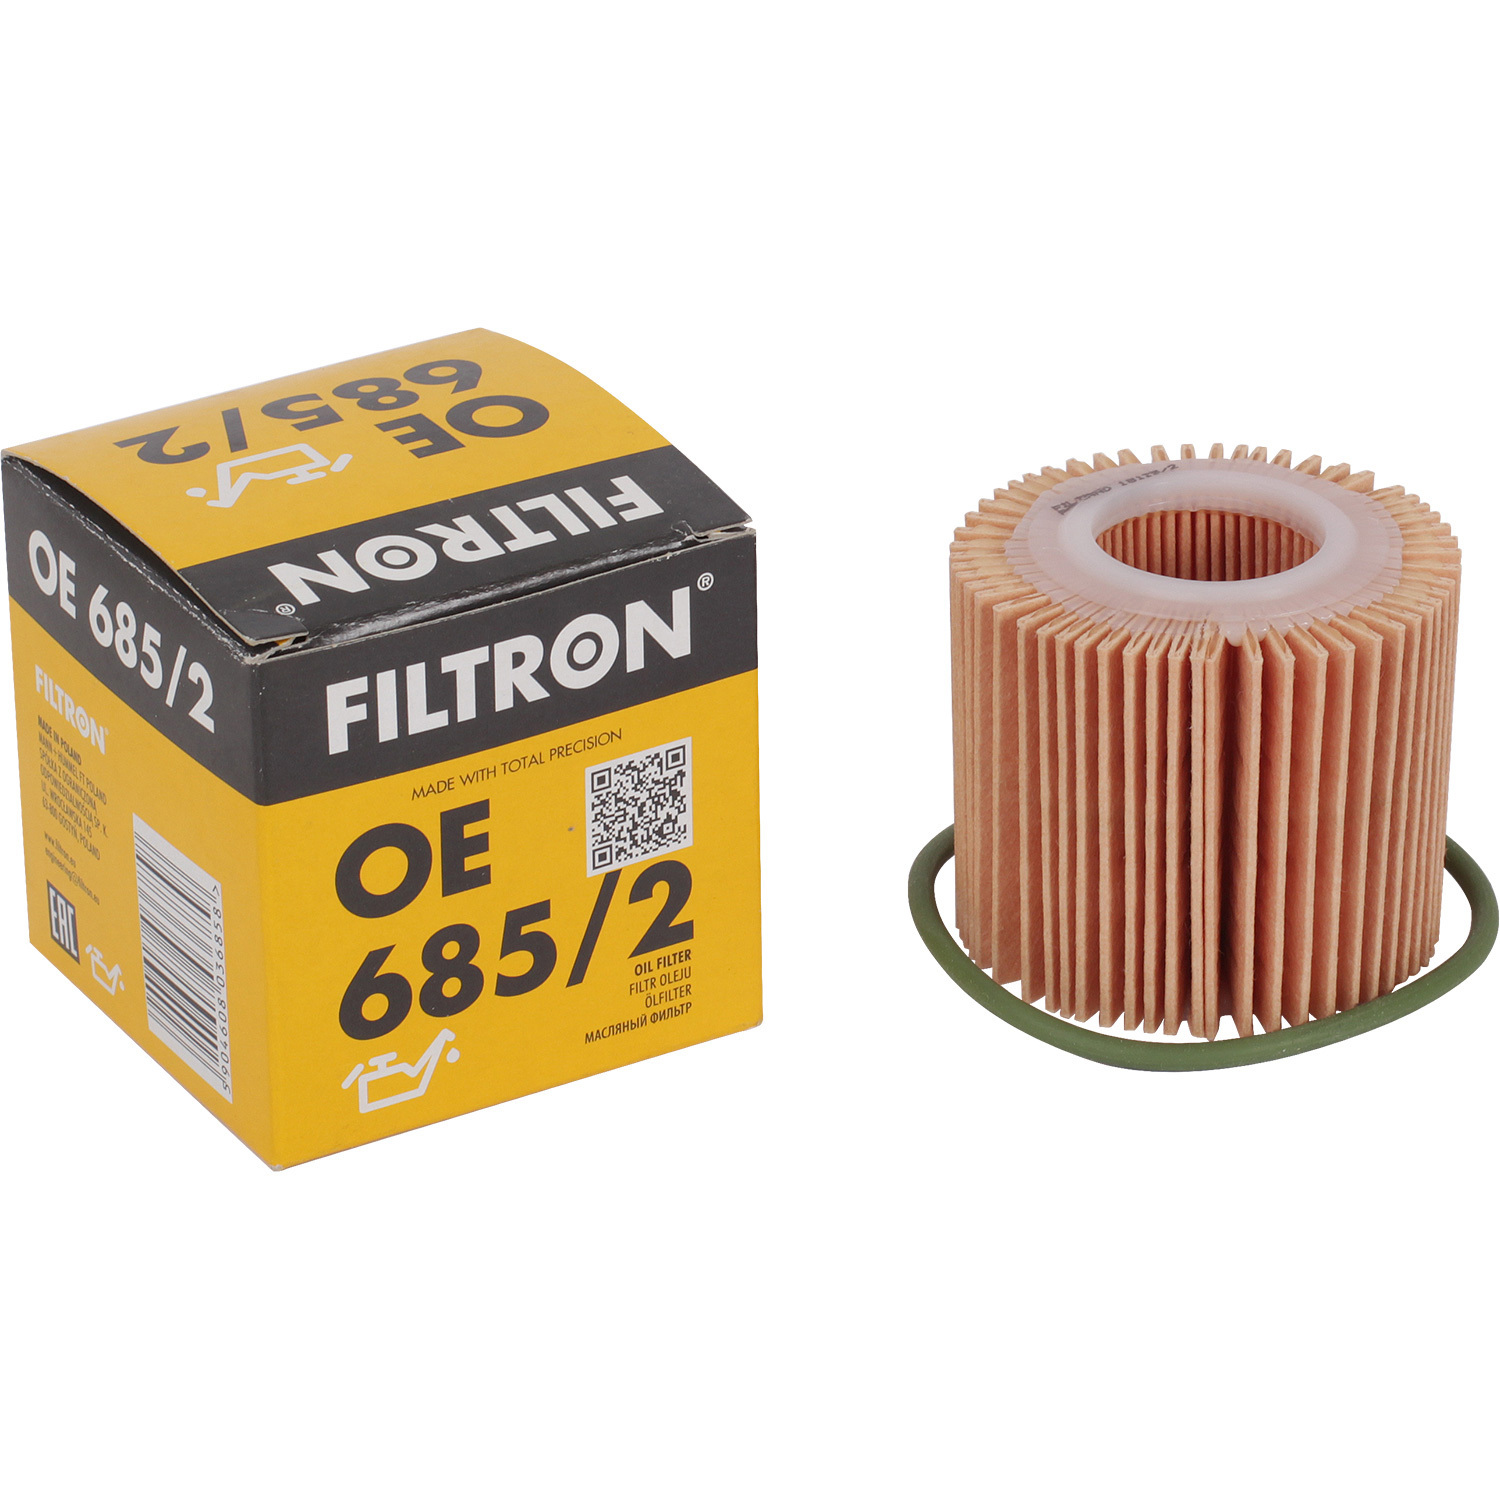 Фильтры Filtron Фильтр масляный Filtron OE6852 масляный фильтр filtron op564